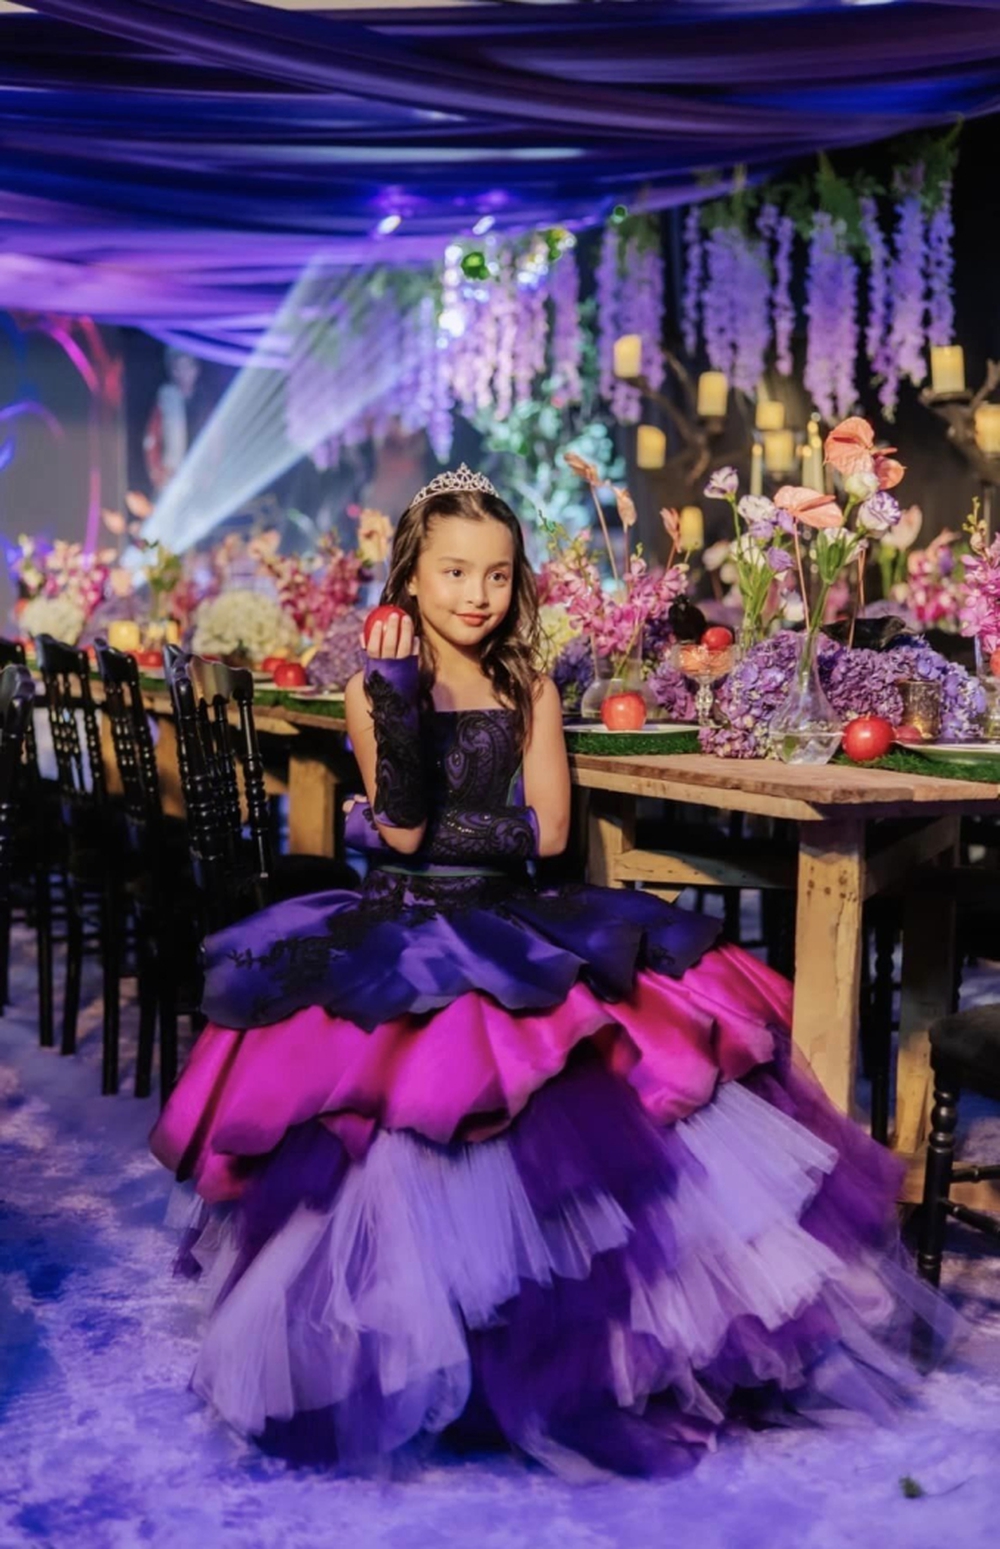 Clip hot: Ái nữ nhà mỹ nhân đẹp nhất Philippines hóa thân thành công chúa trong tiệc sinh nhật 8 tuổi, khiến 250 ngàn người phát sốt - Ảnh 2.